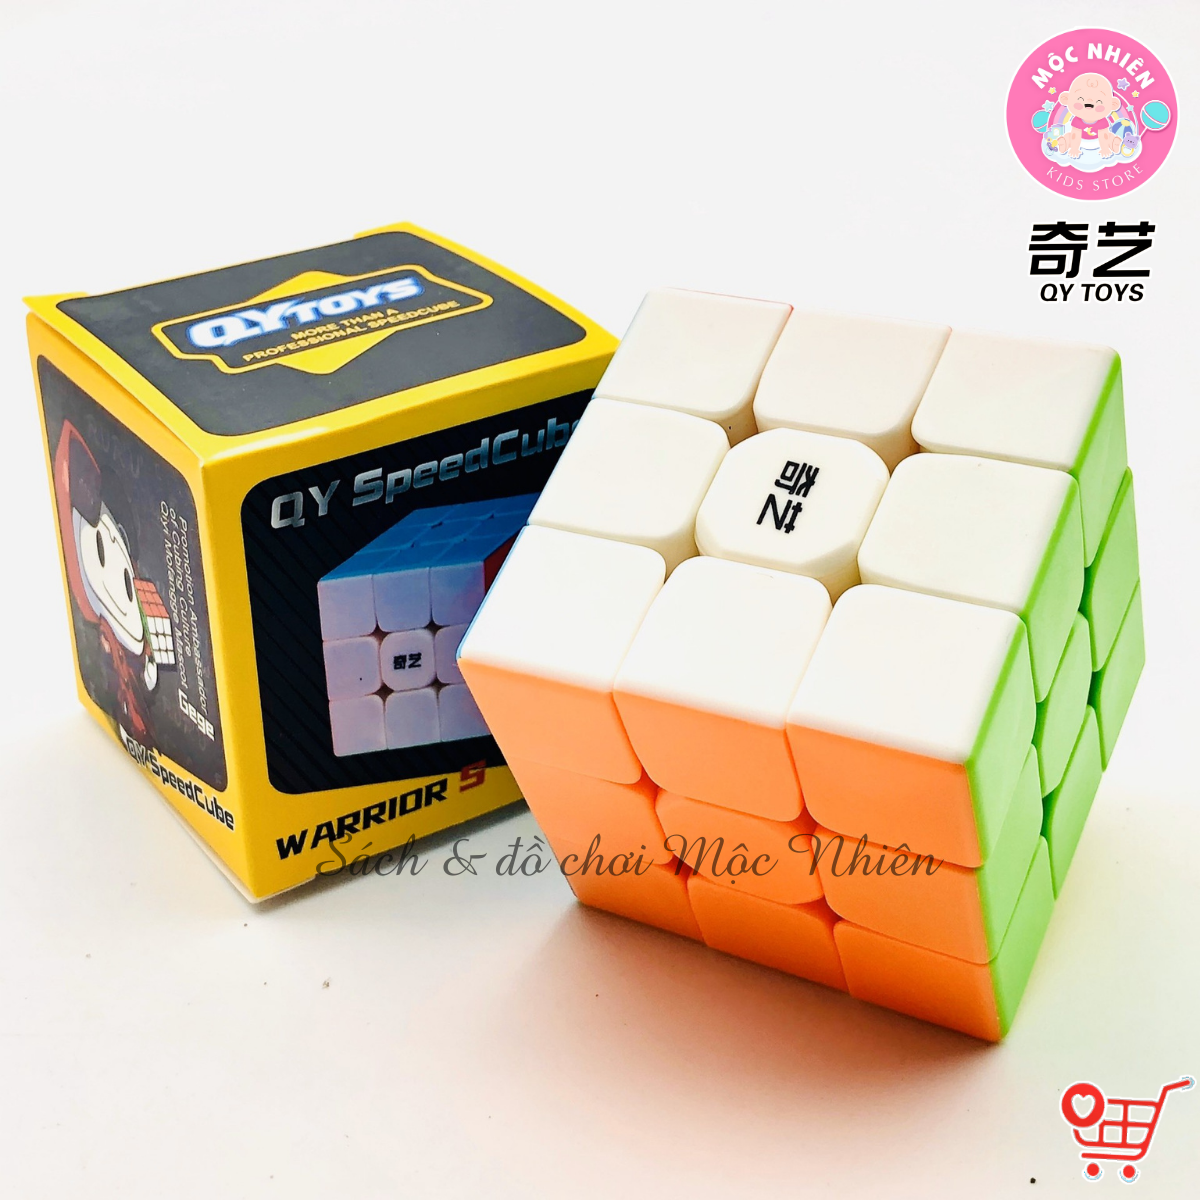 Đồ chơi trí tuệ Rubik Qiyi QY TOYS – Stickerless 2x2 3x3 4x4 5x5 Pyraminx Skewb Megaminx Square-1 Windmill Dino Axis